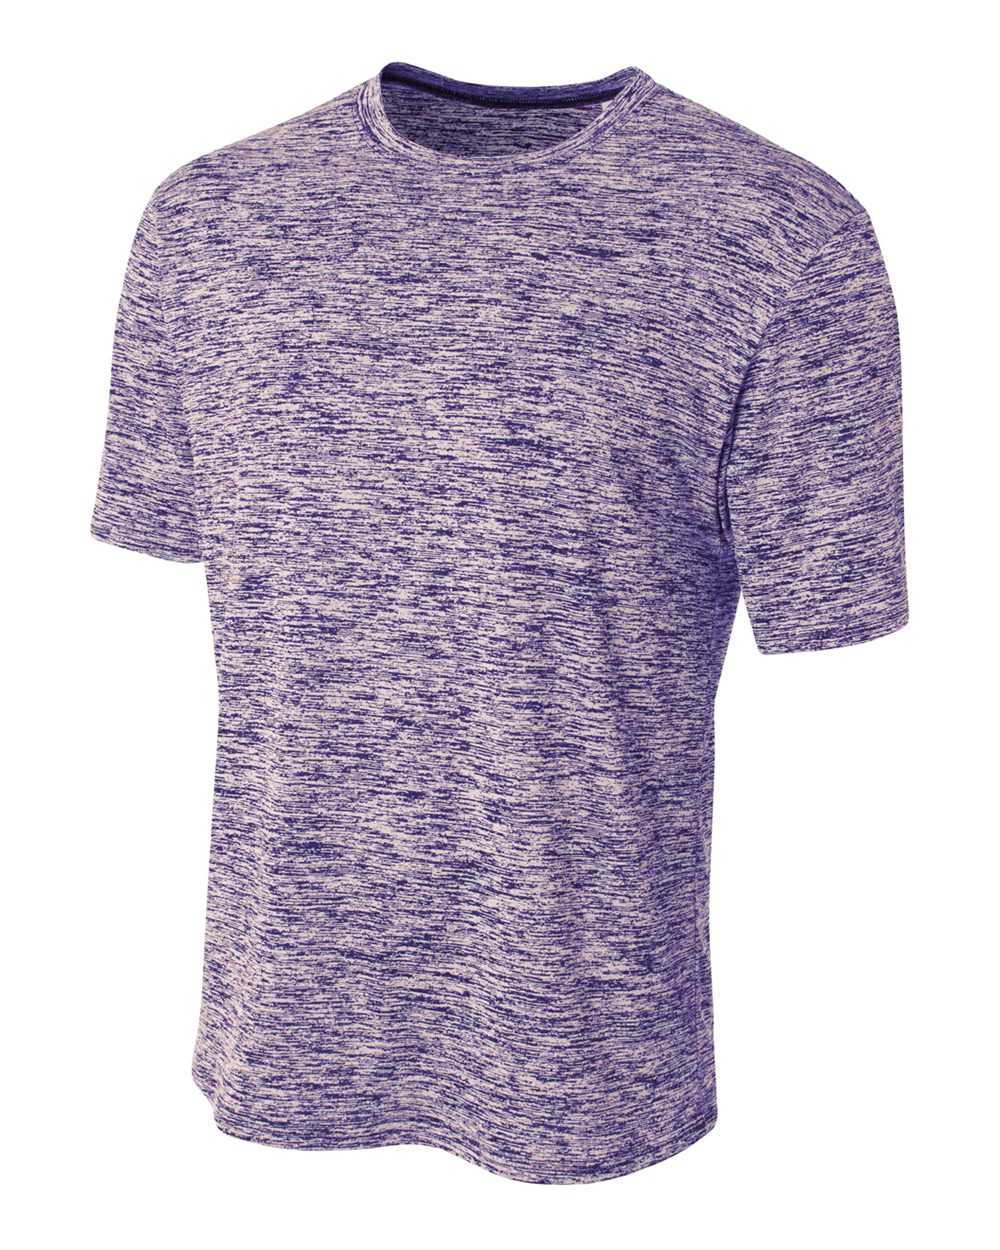 A4 N3296 Space Dye Tech Shirt - Purple - HIT a Double